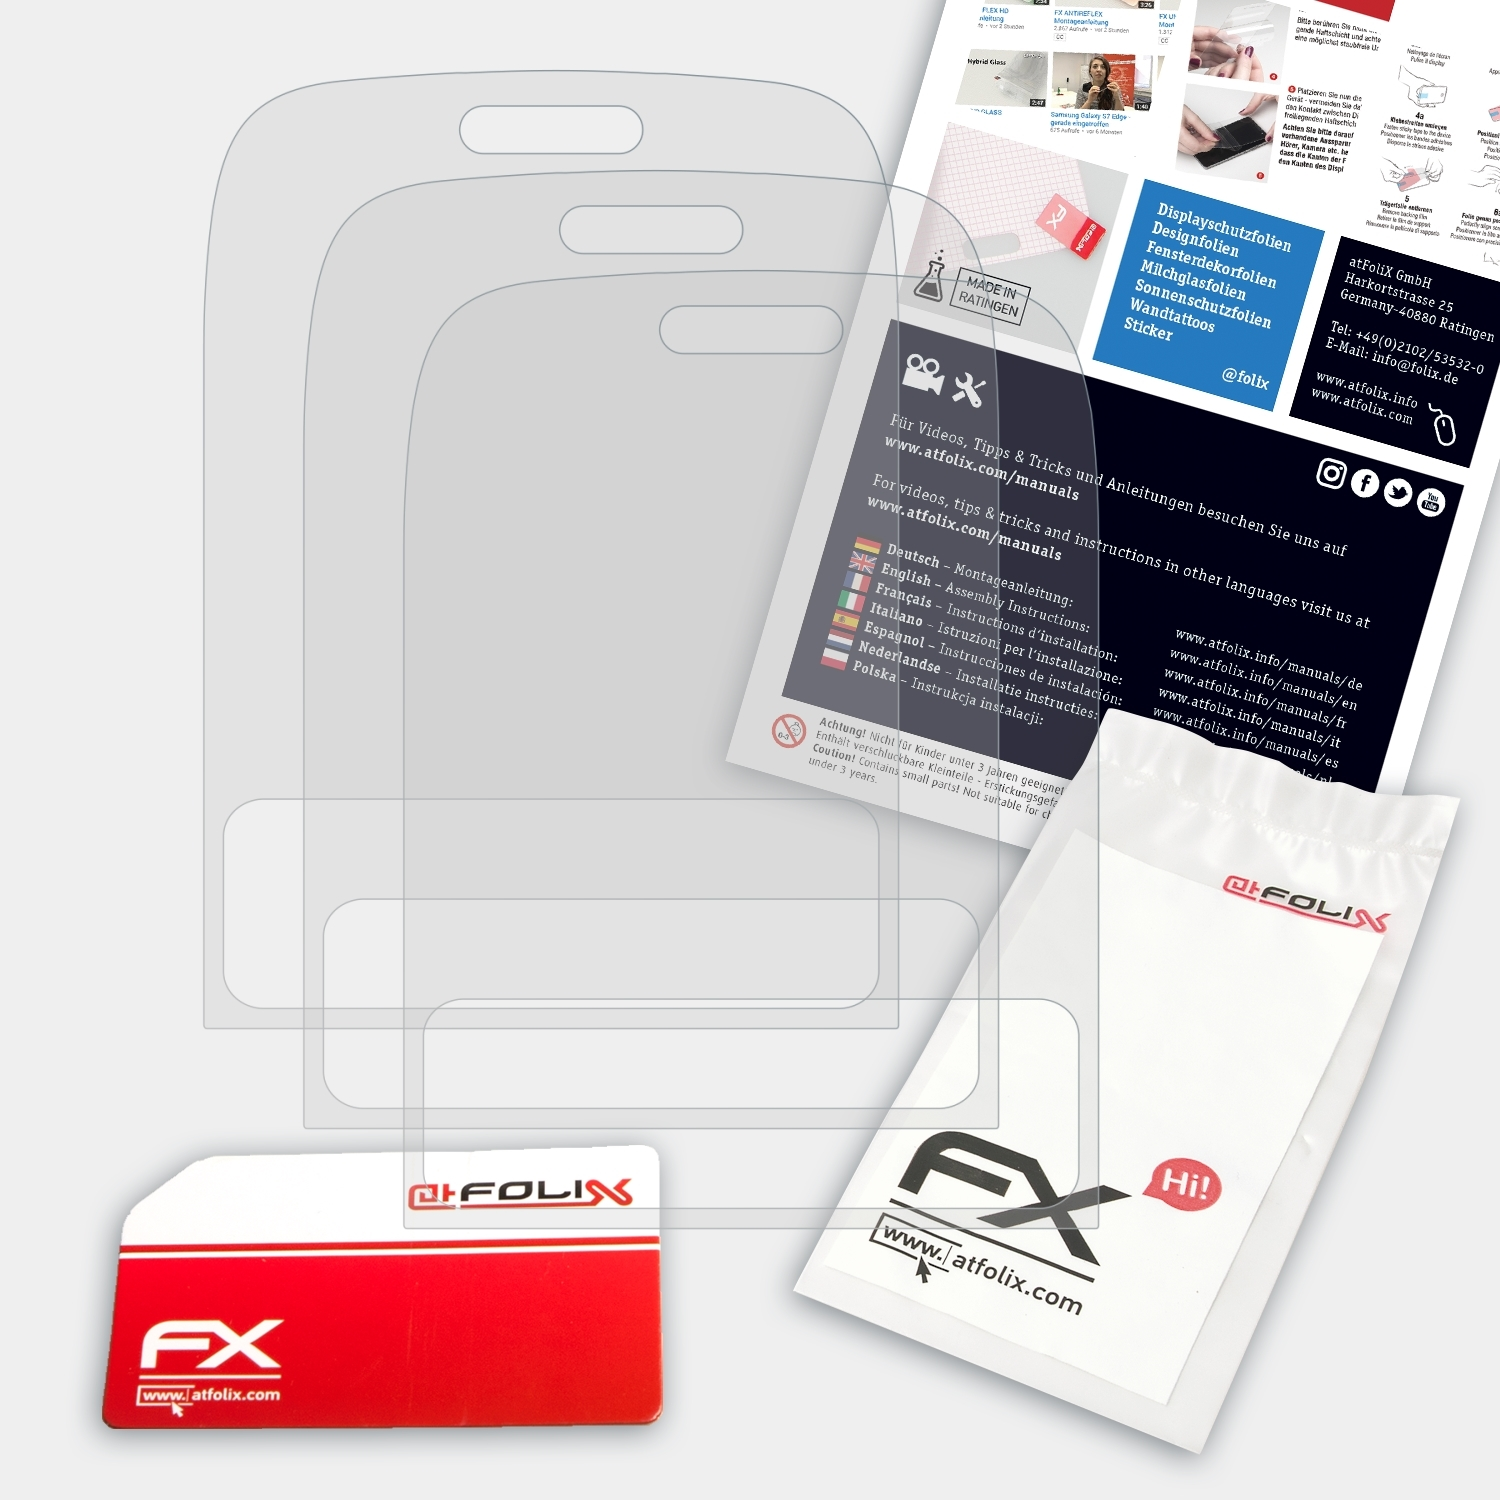 Asha FX-Antireflex 3x Nokia ATFOLIX Displayschutz(für 302)